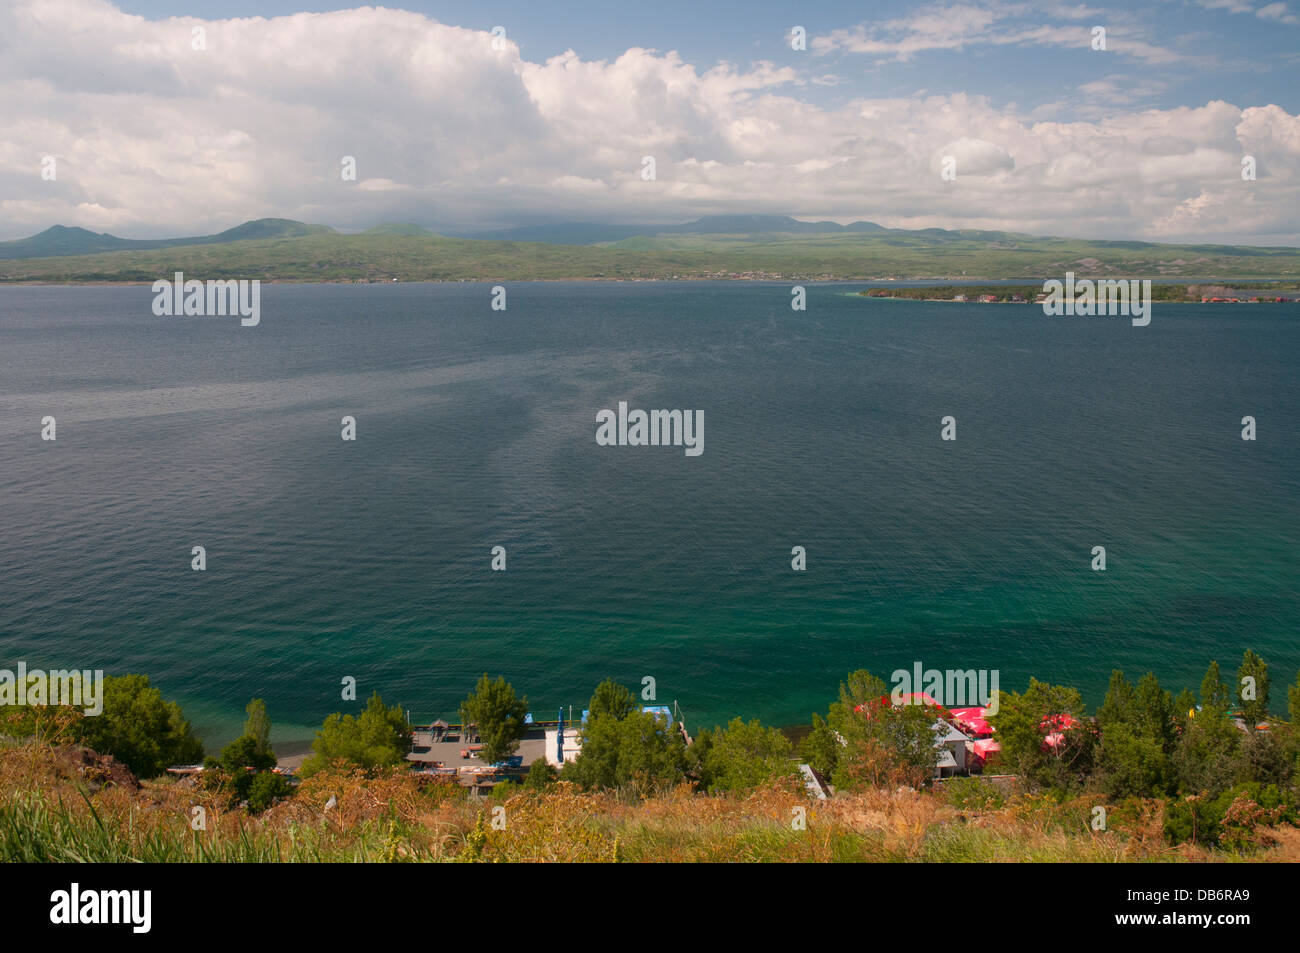 Lake Sevan, Armenia, a 30 x 80 km alpine lake at 1900 metres altitude Stock Photo